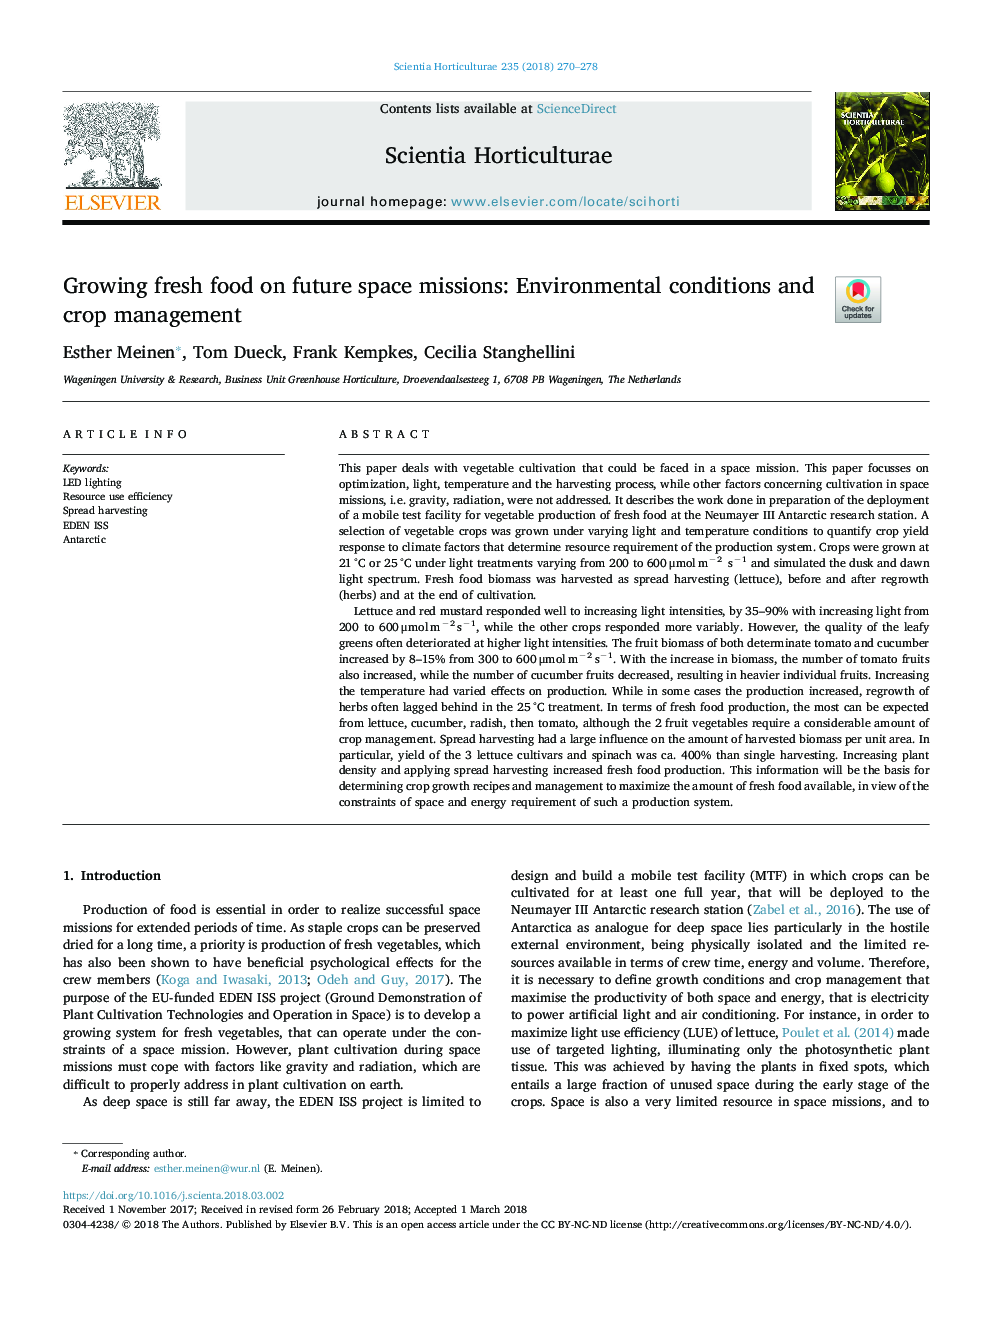 رشد مواد غذایی تازه در ماموریت های فضایی آینده: شرایط محیطی و مدیریت 